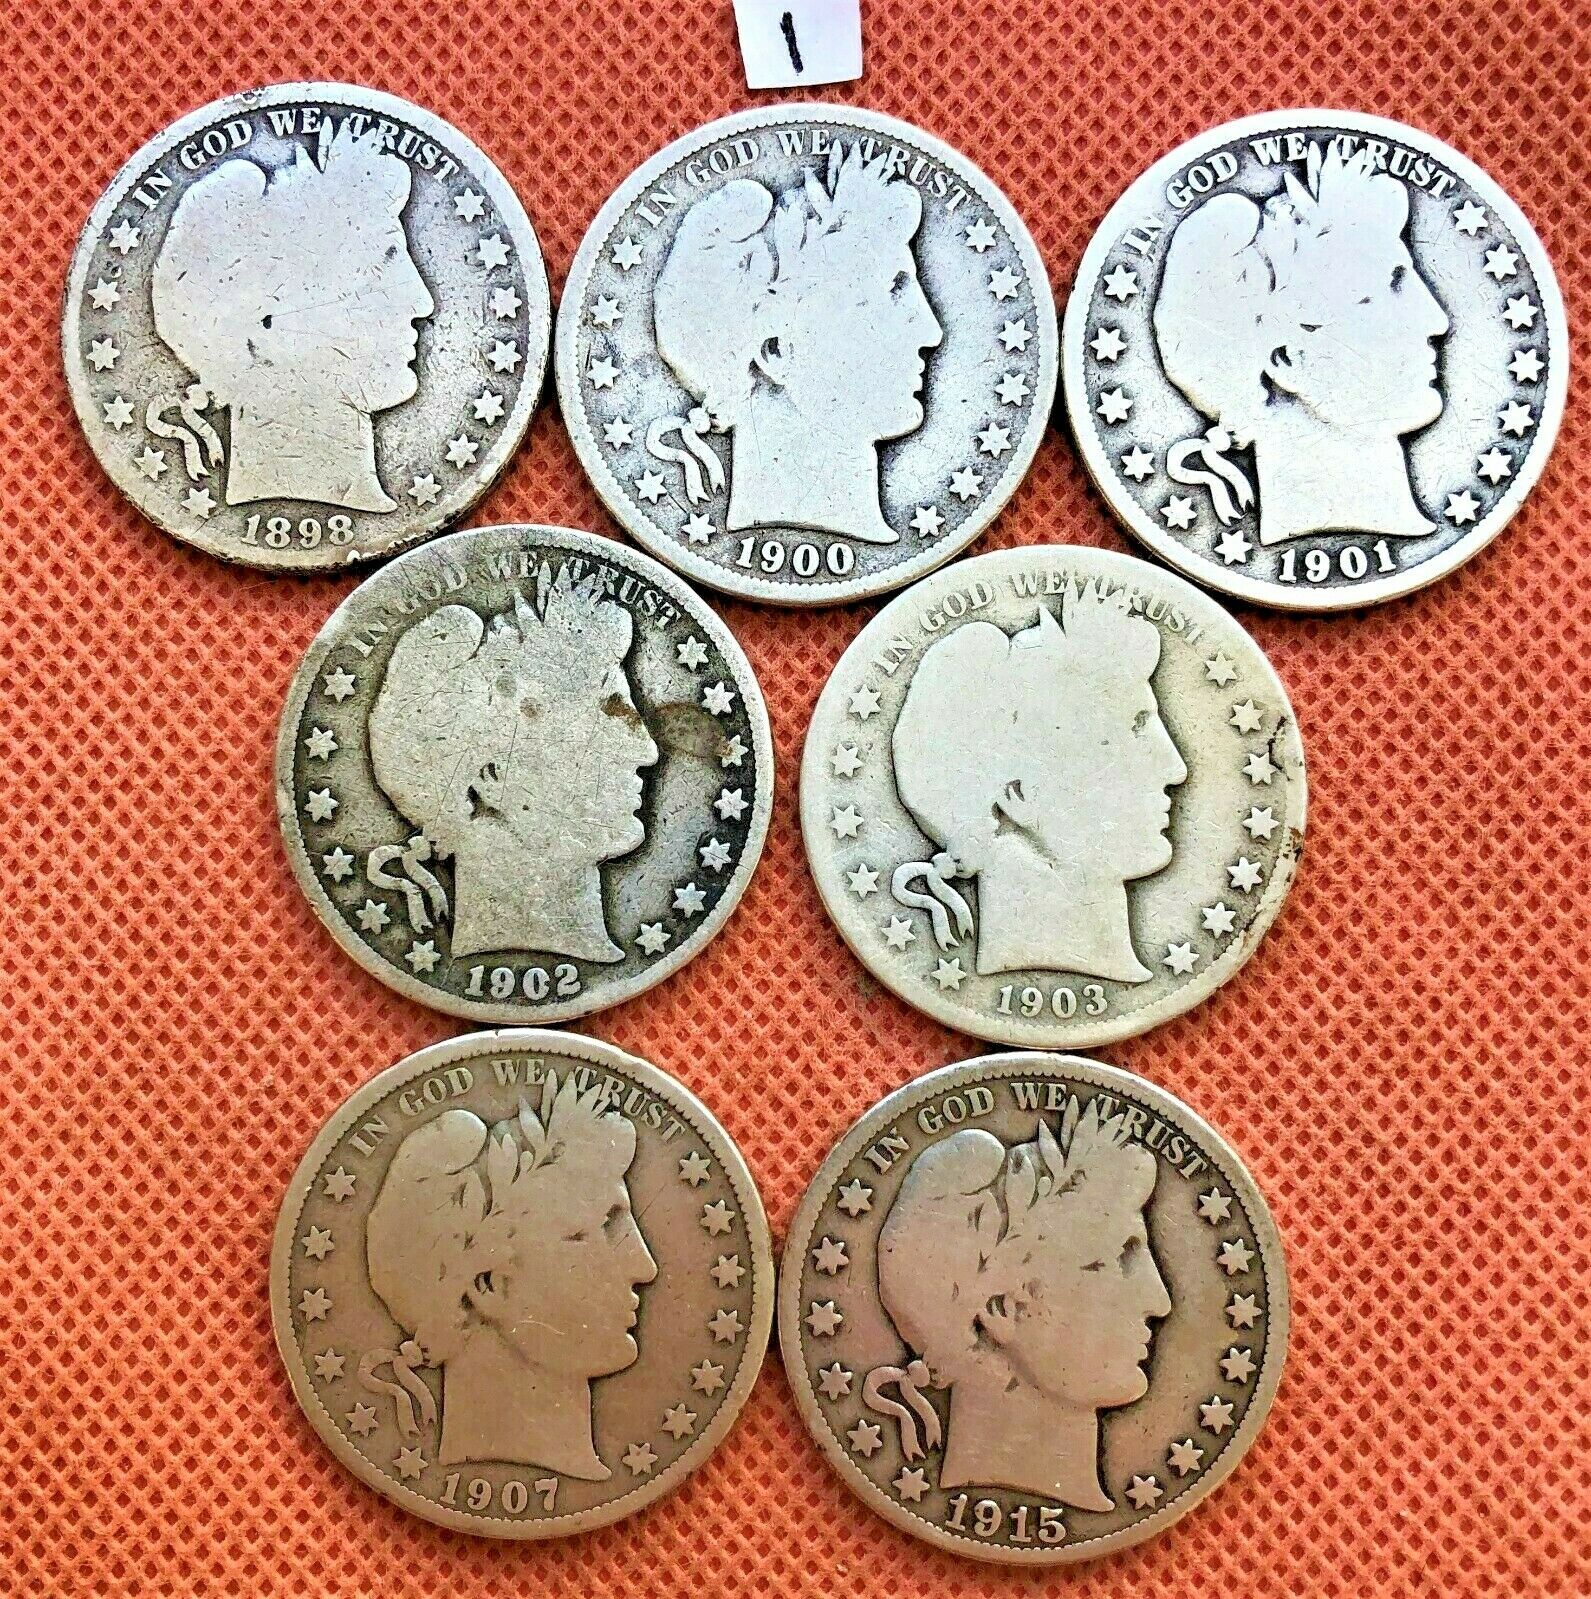 7 Barber Half Coins 1898-p, 1900-p, 1901-p, 1902-p, 1903-o, 1907-o, 1915-p #1